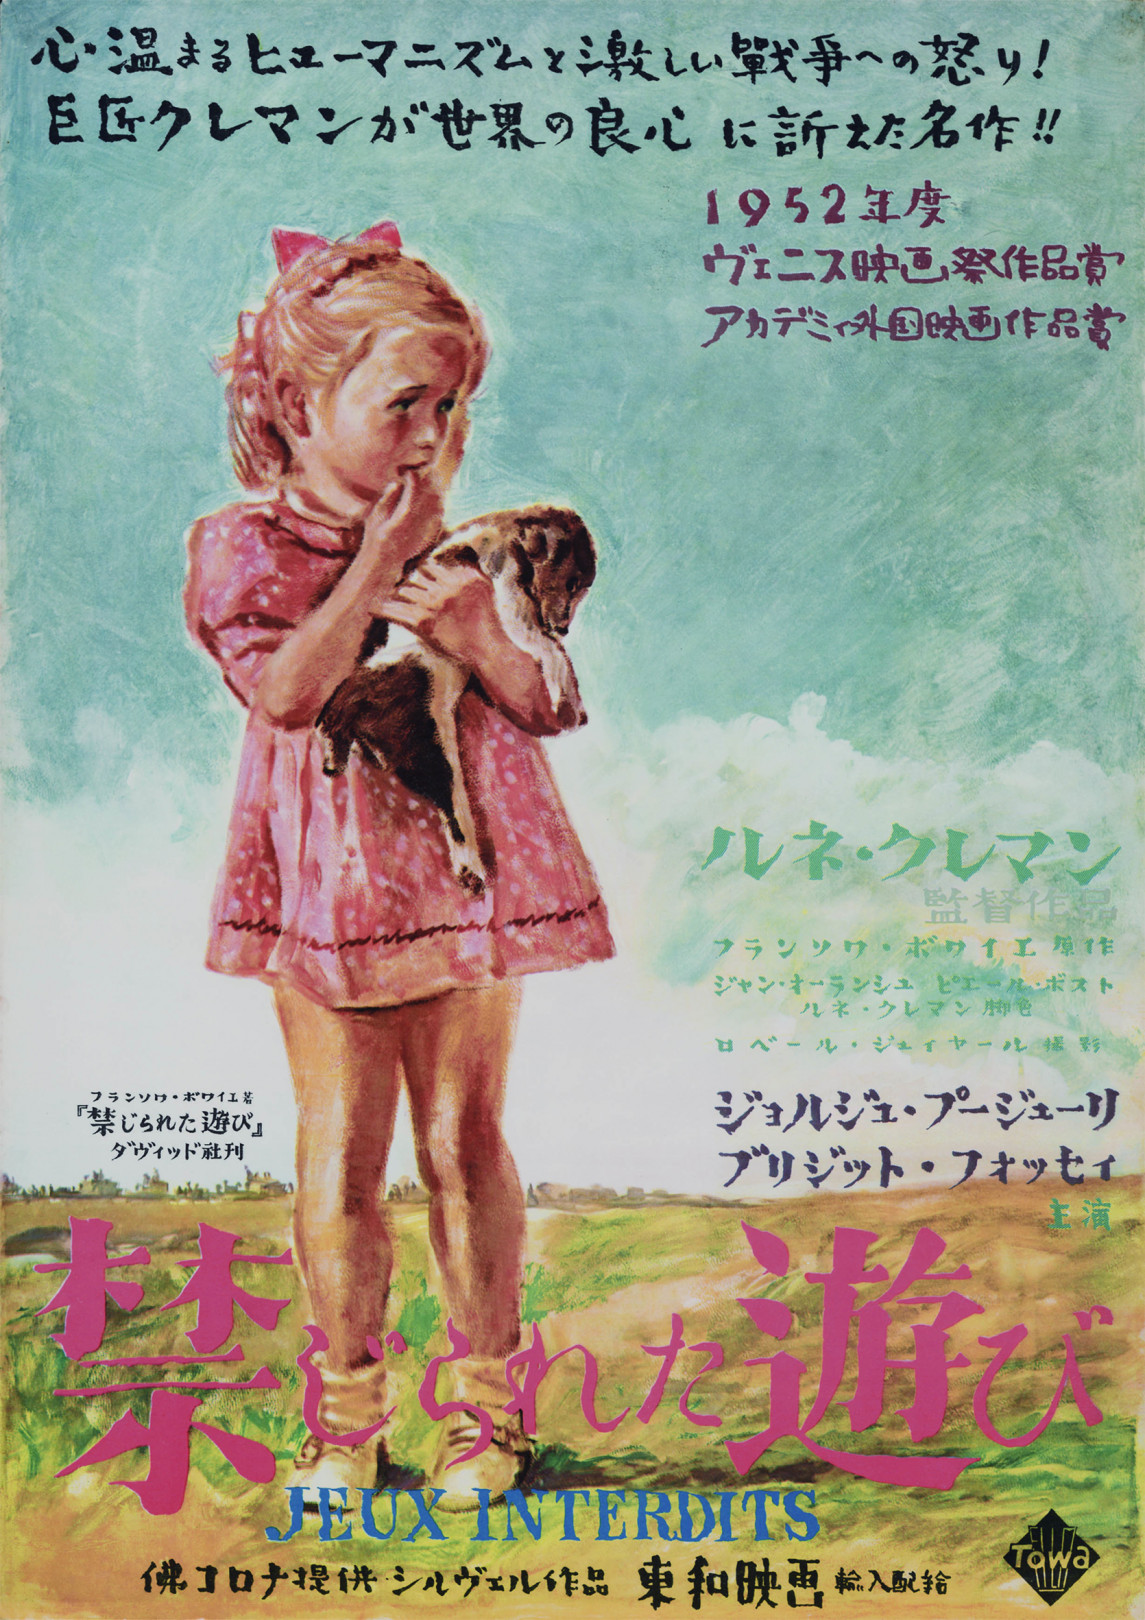 「禁じられた遊び」 映画ポスター 1953年